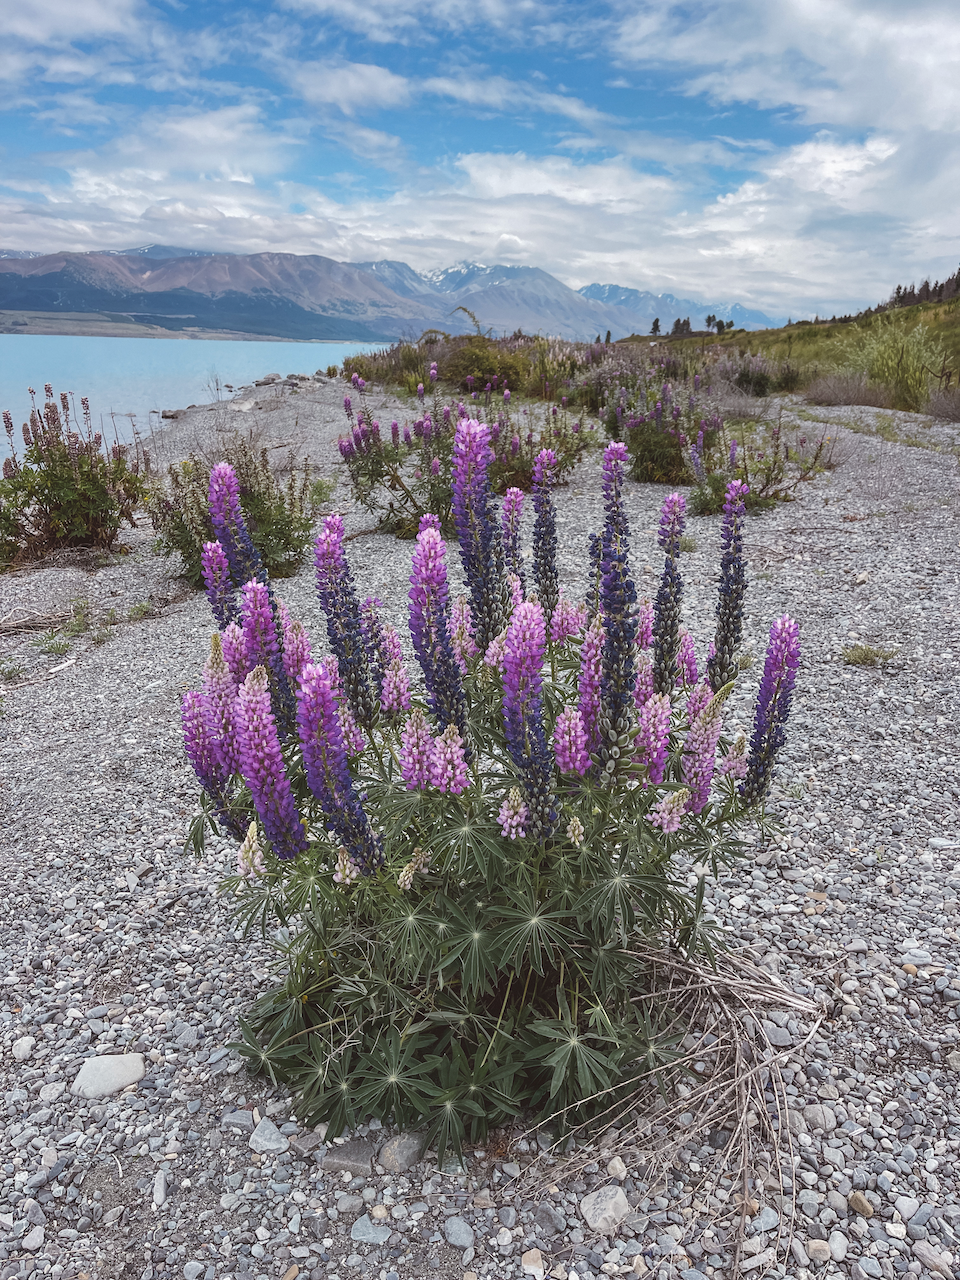 Bouquet de lupins violets - Lac Pukaki - Nouvelle-Zélande